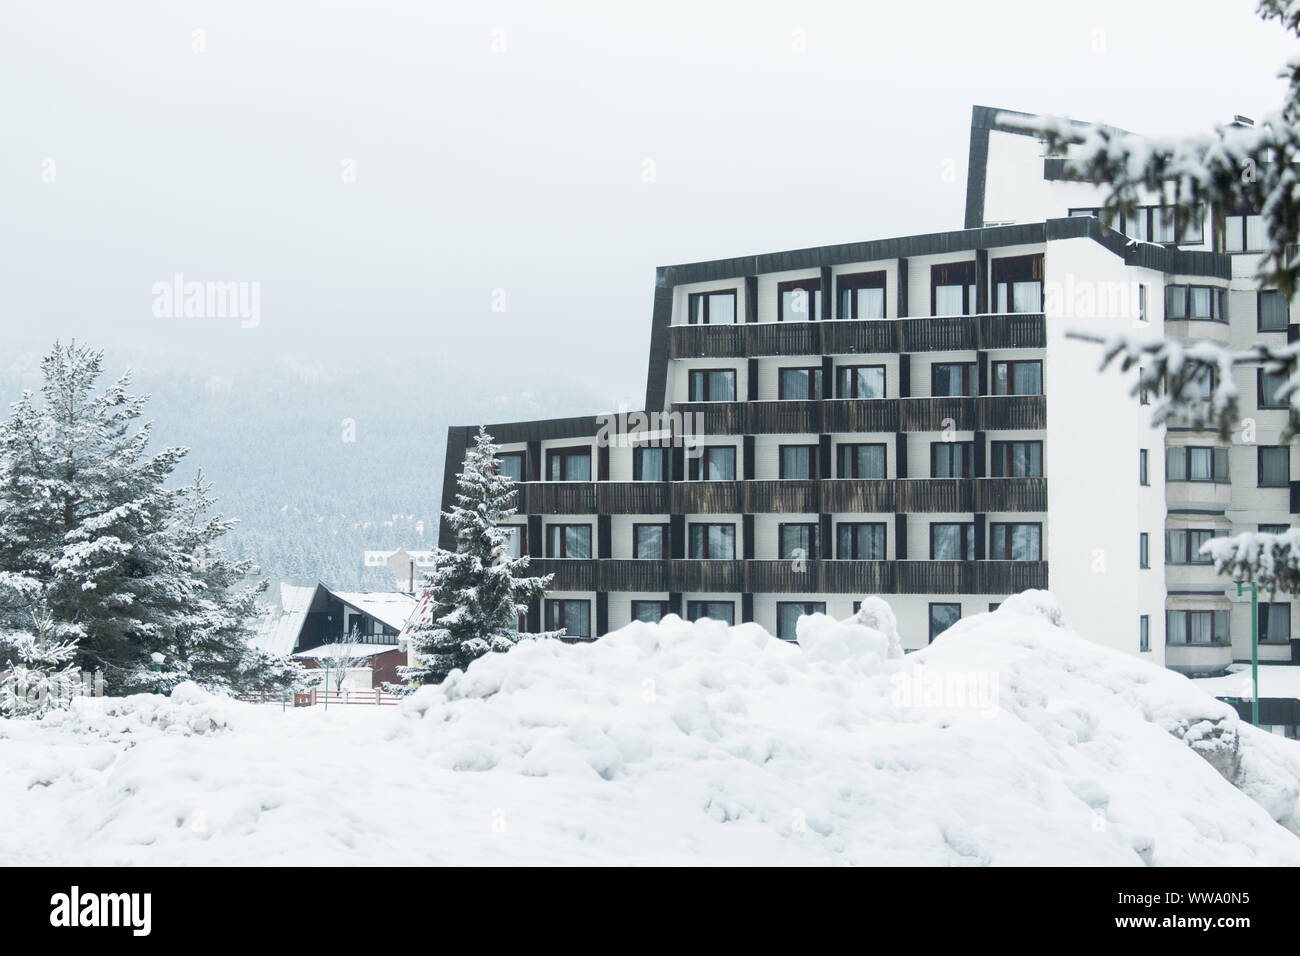 Hotel in a ski resort Stock Photo